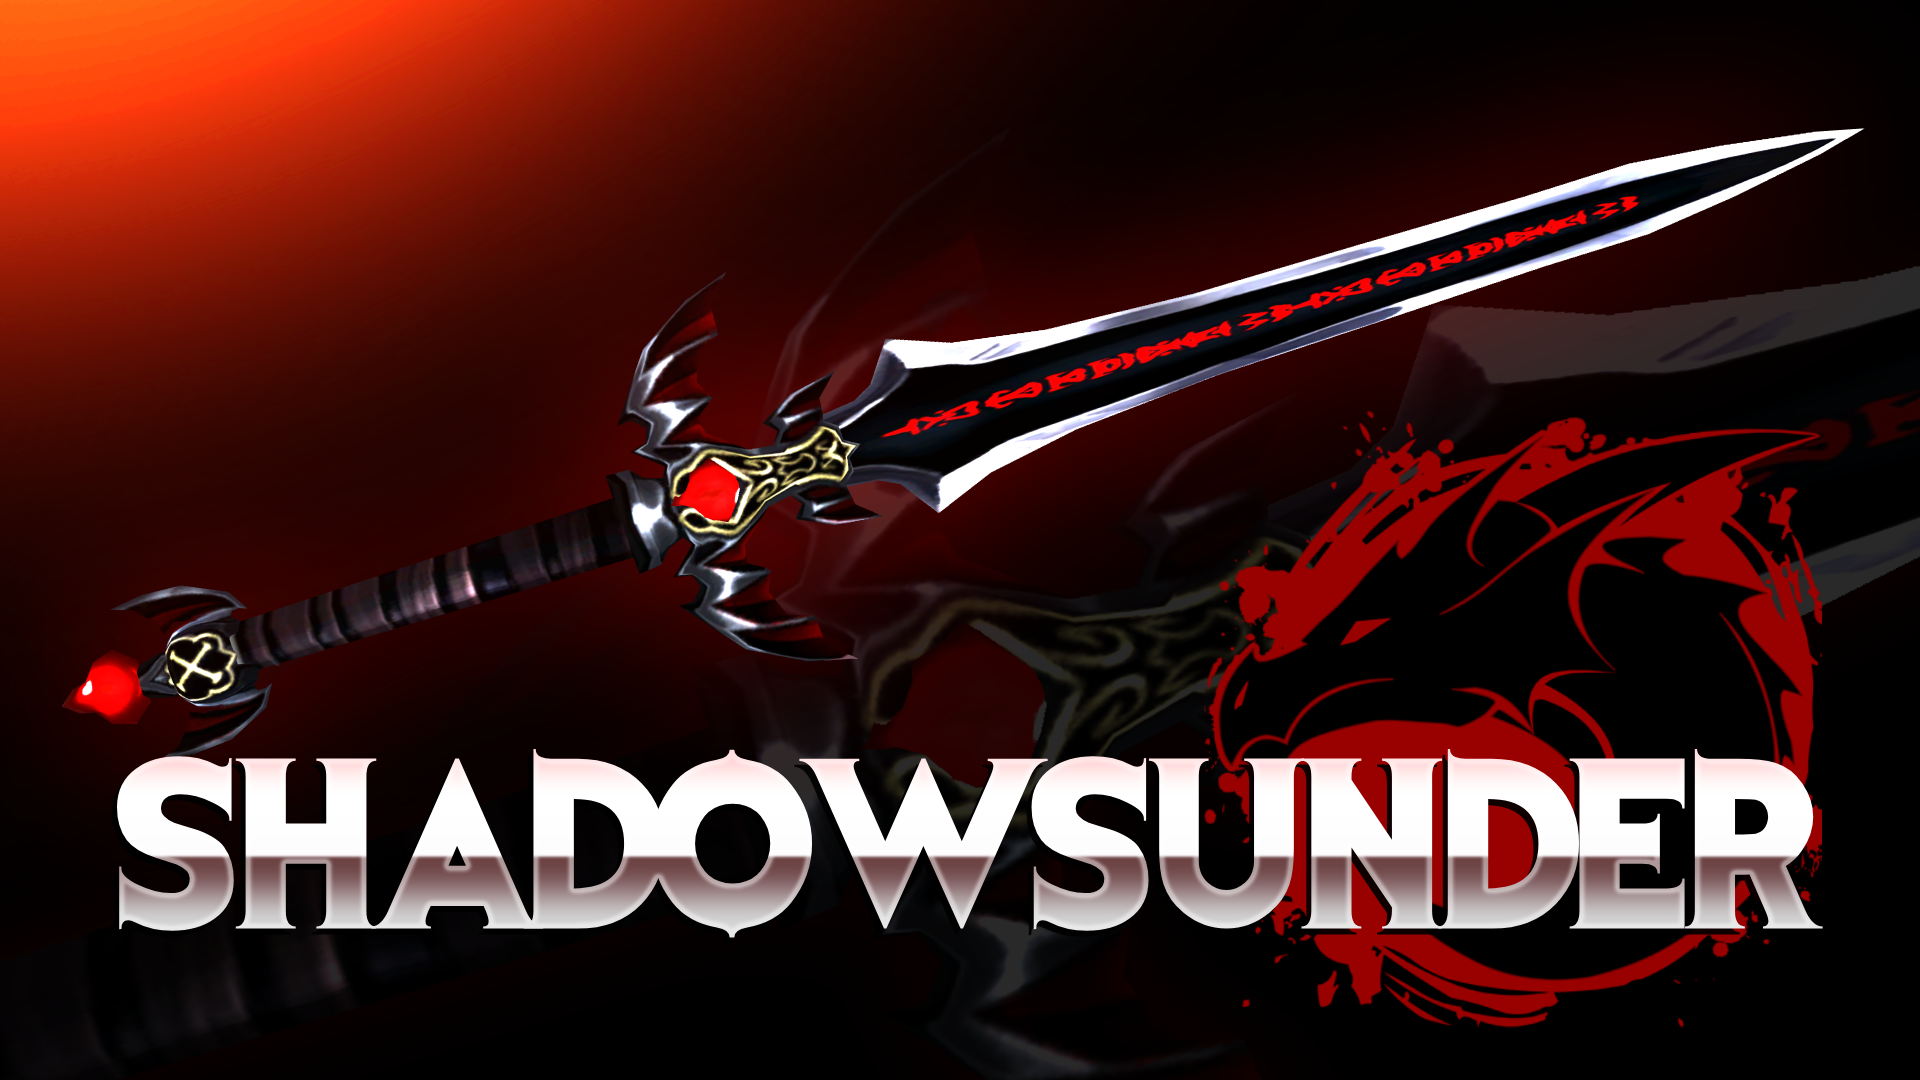 ShadowSunder